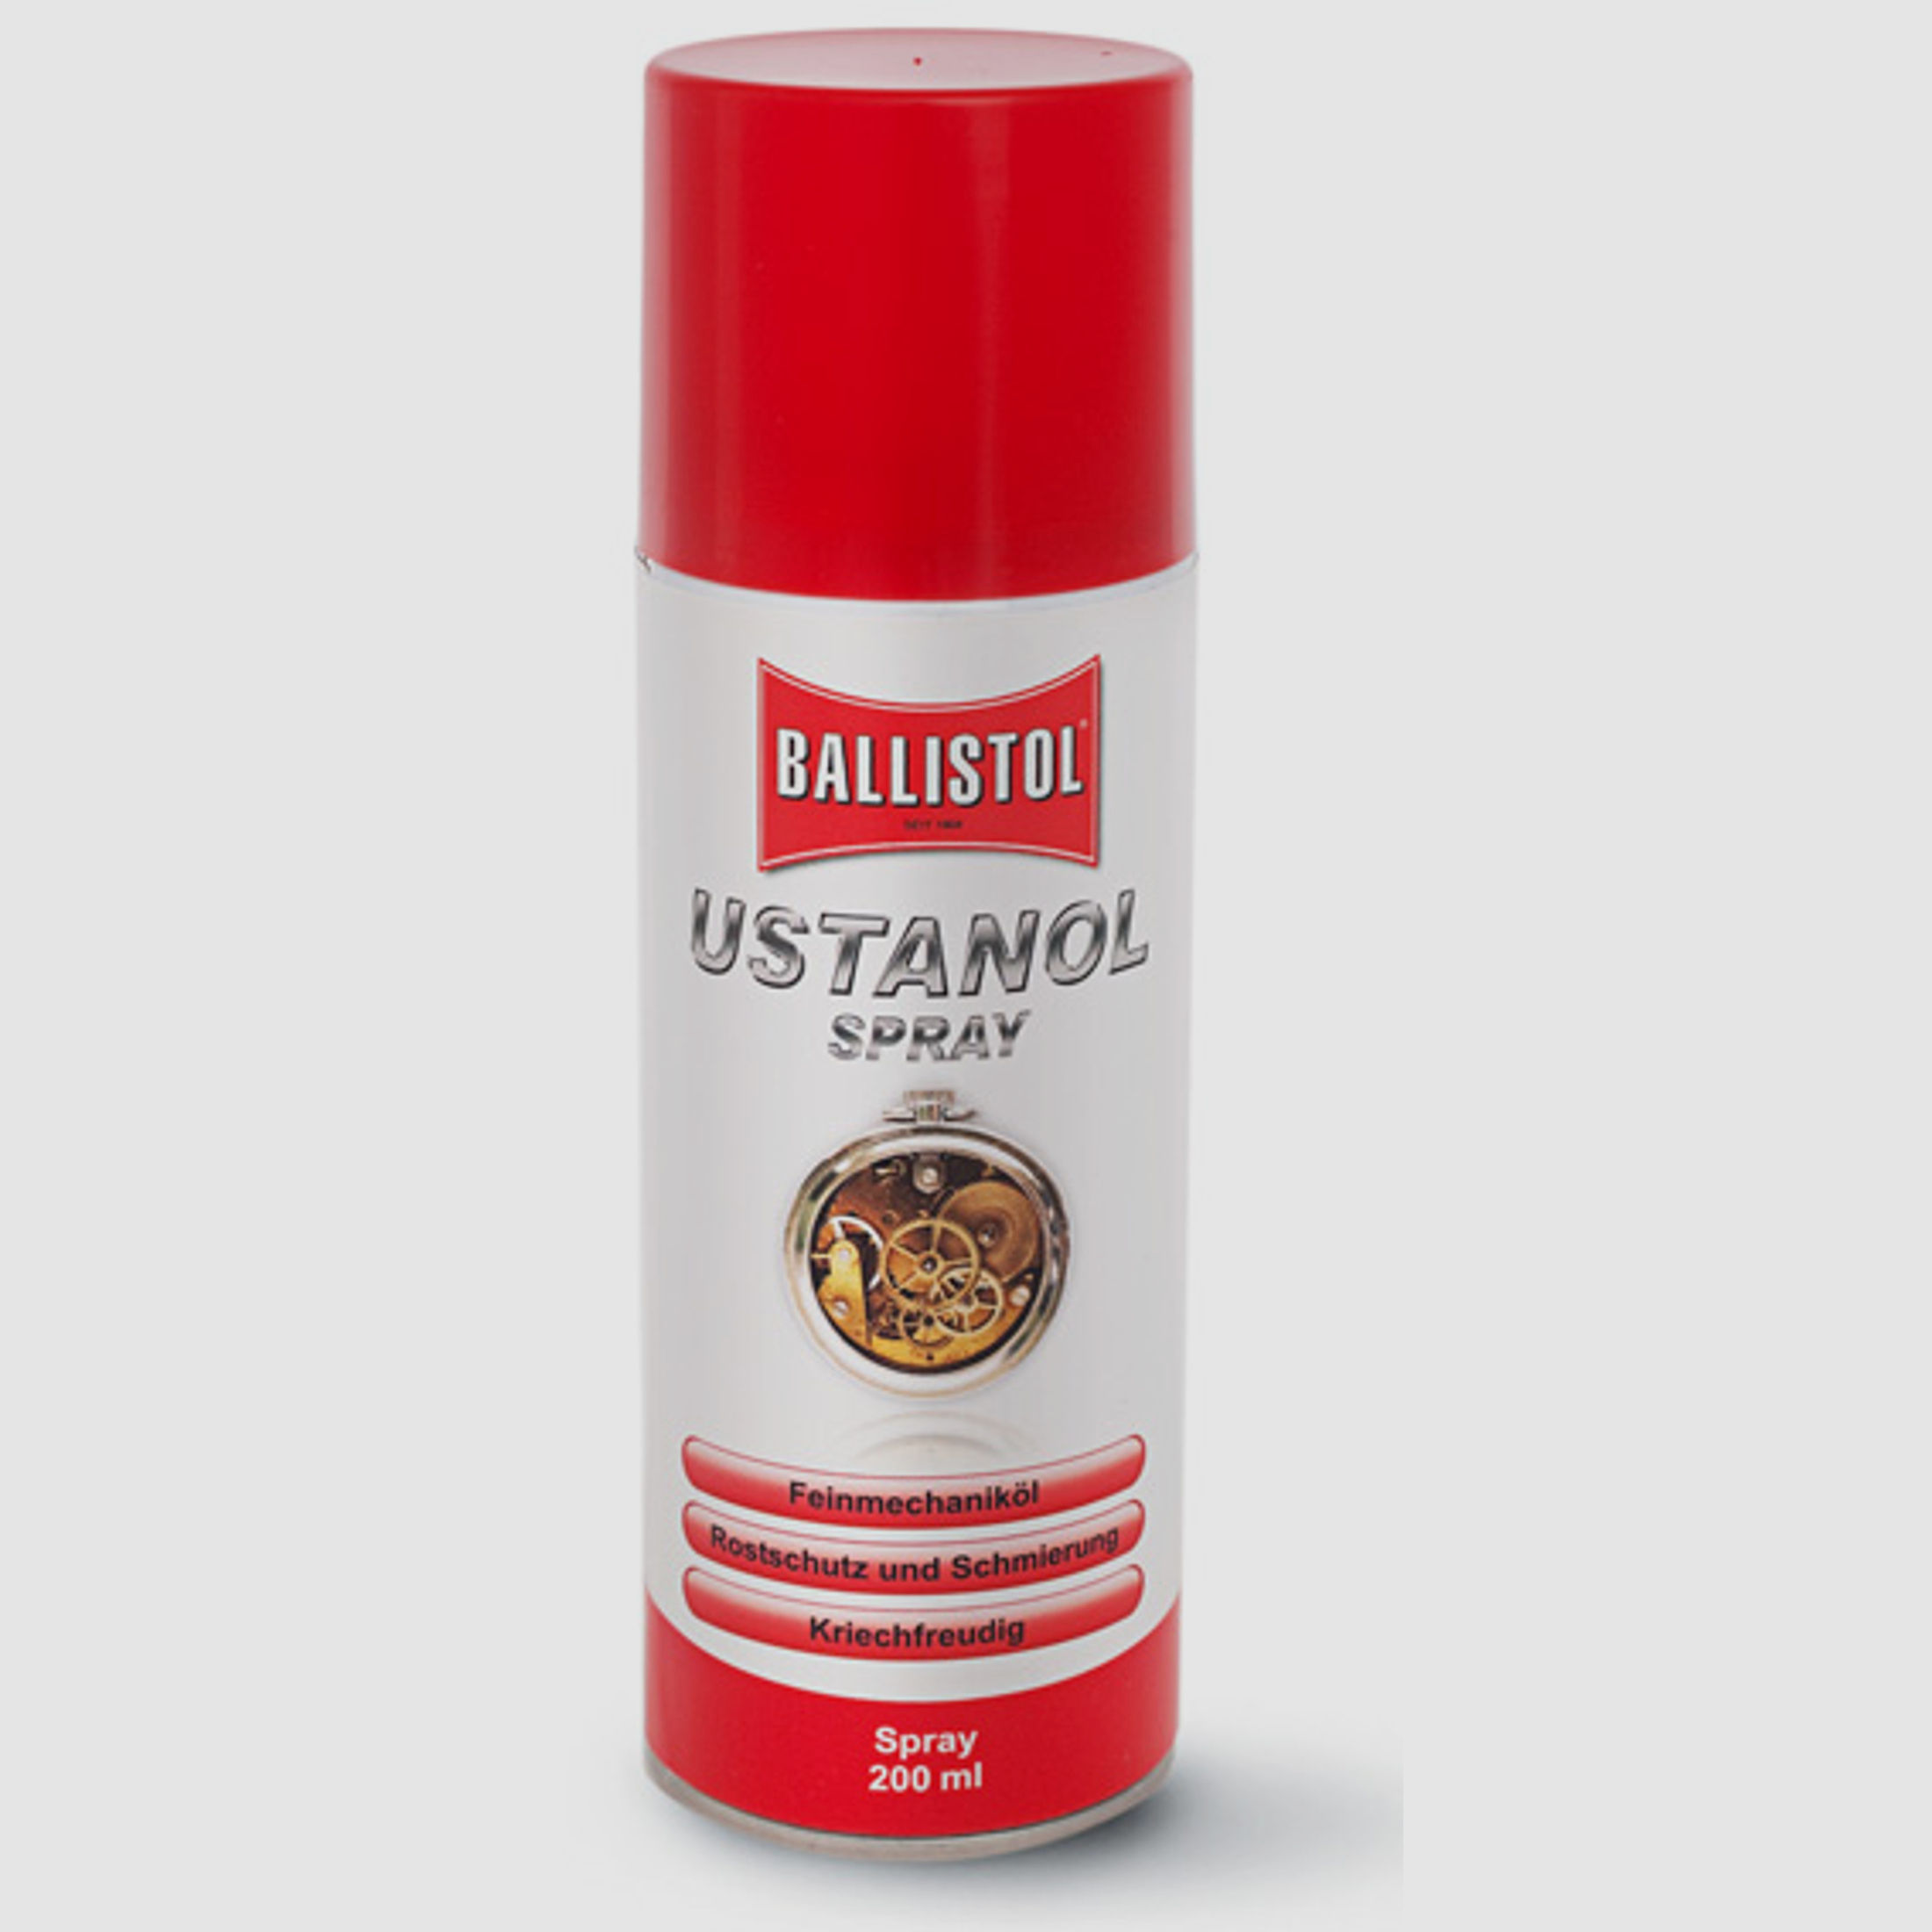 Ballistol USTANOL 200ml Spray #22800 | Rostschutz, Konserviert > kriechfreudiges Öl für Werkstatt